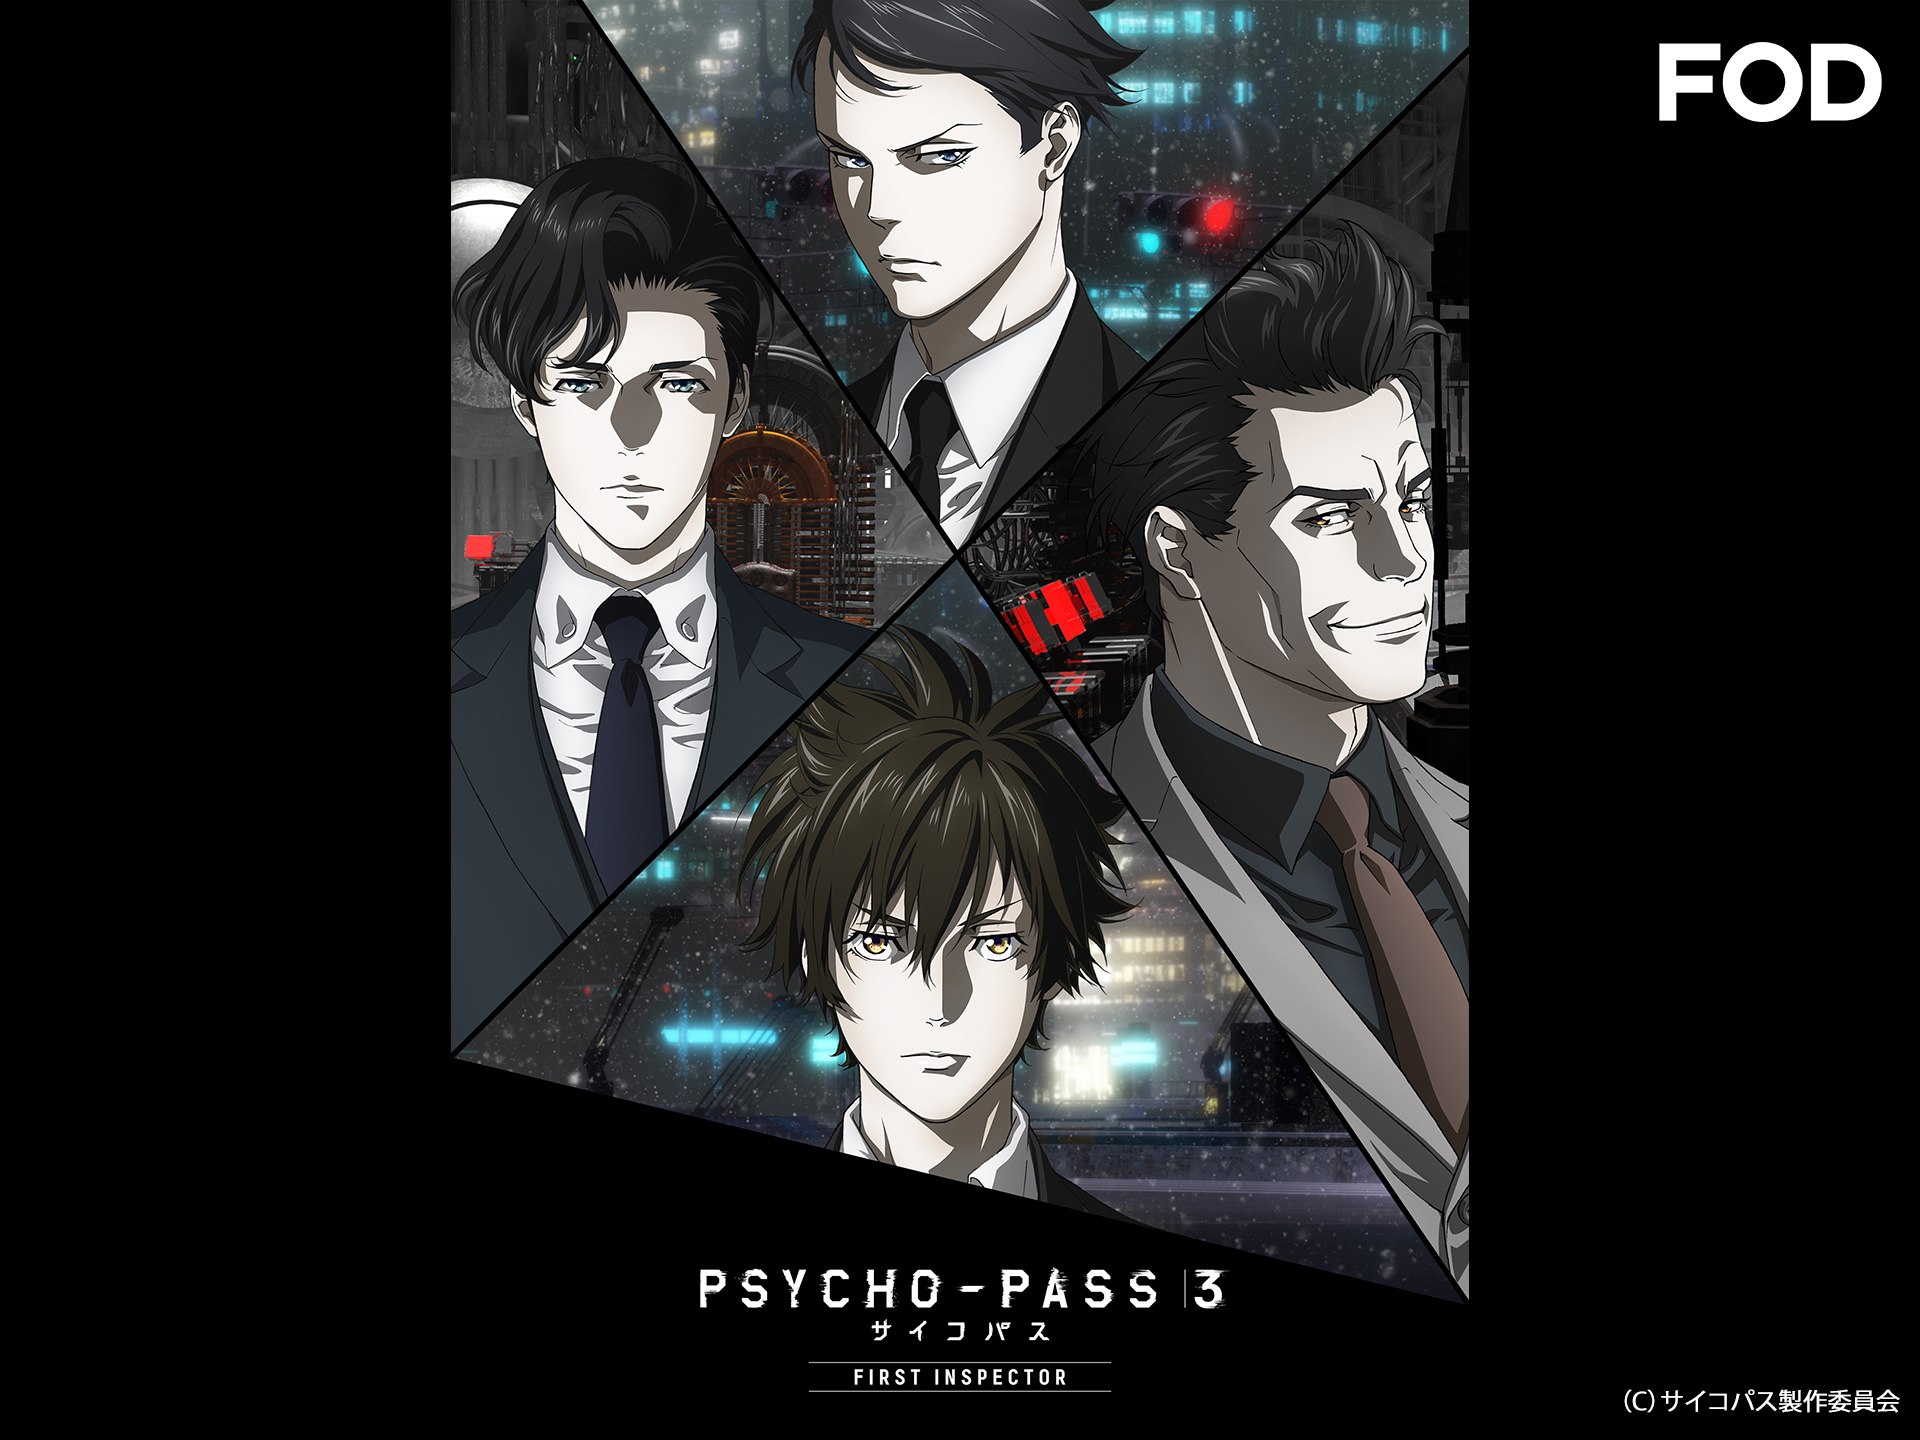 アニメ Psycho Pass サイコパス 3 First Inspector 編集版 第1話 第3話 の動画を配信中 初月無料 動画配信サービスのビデオマーケット